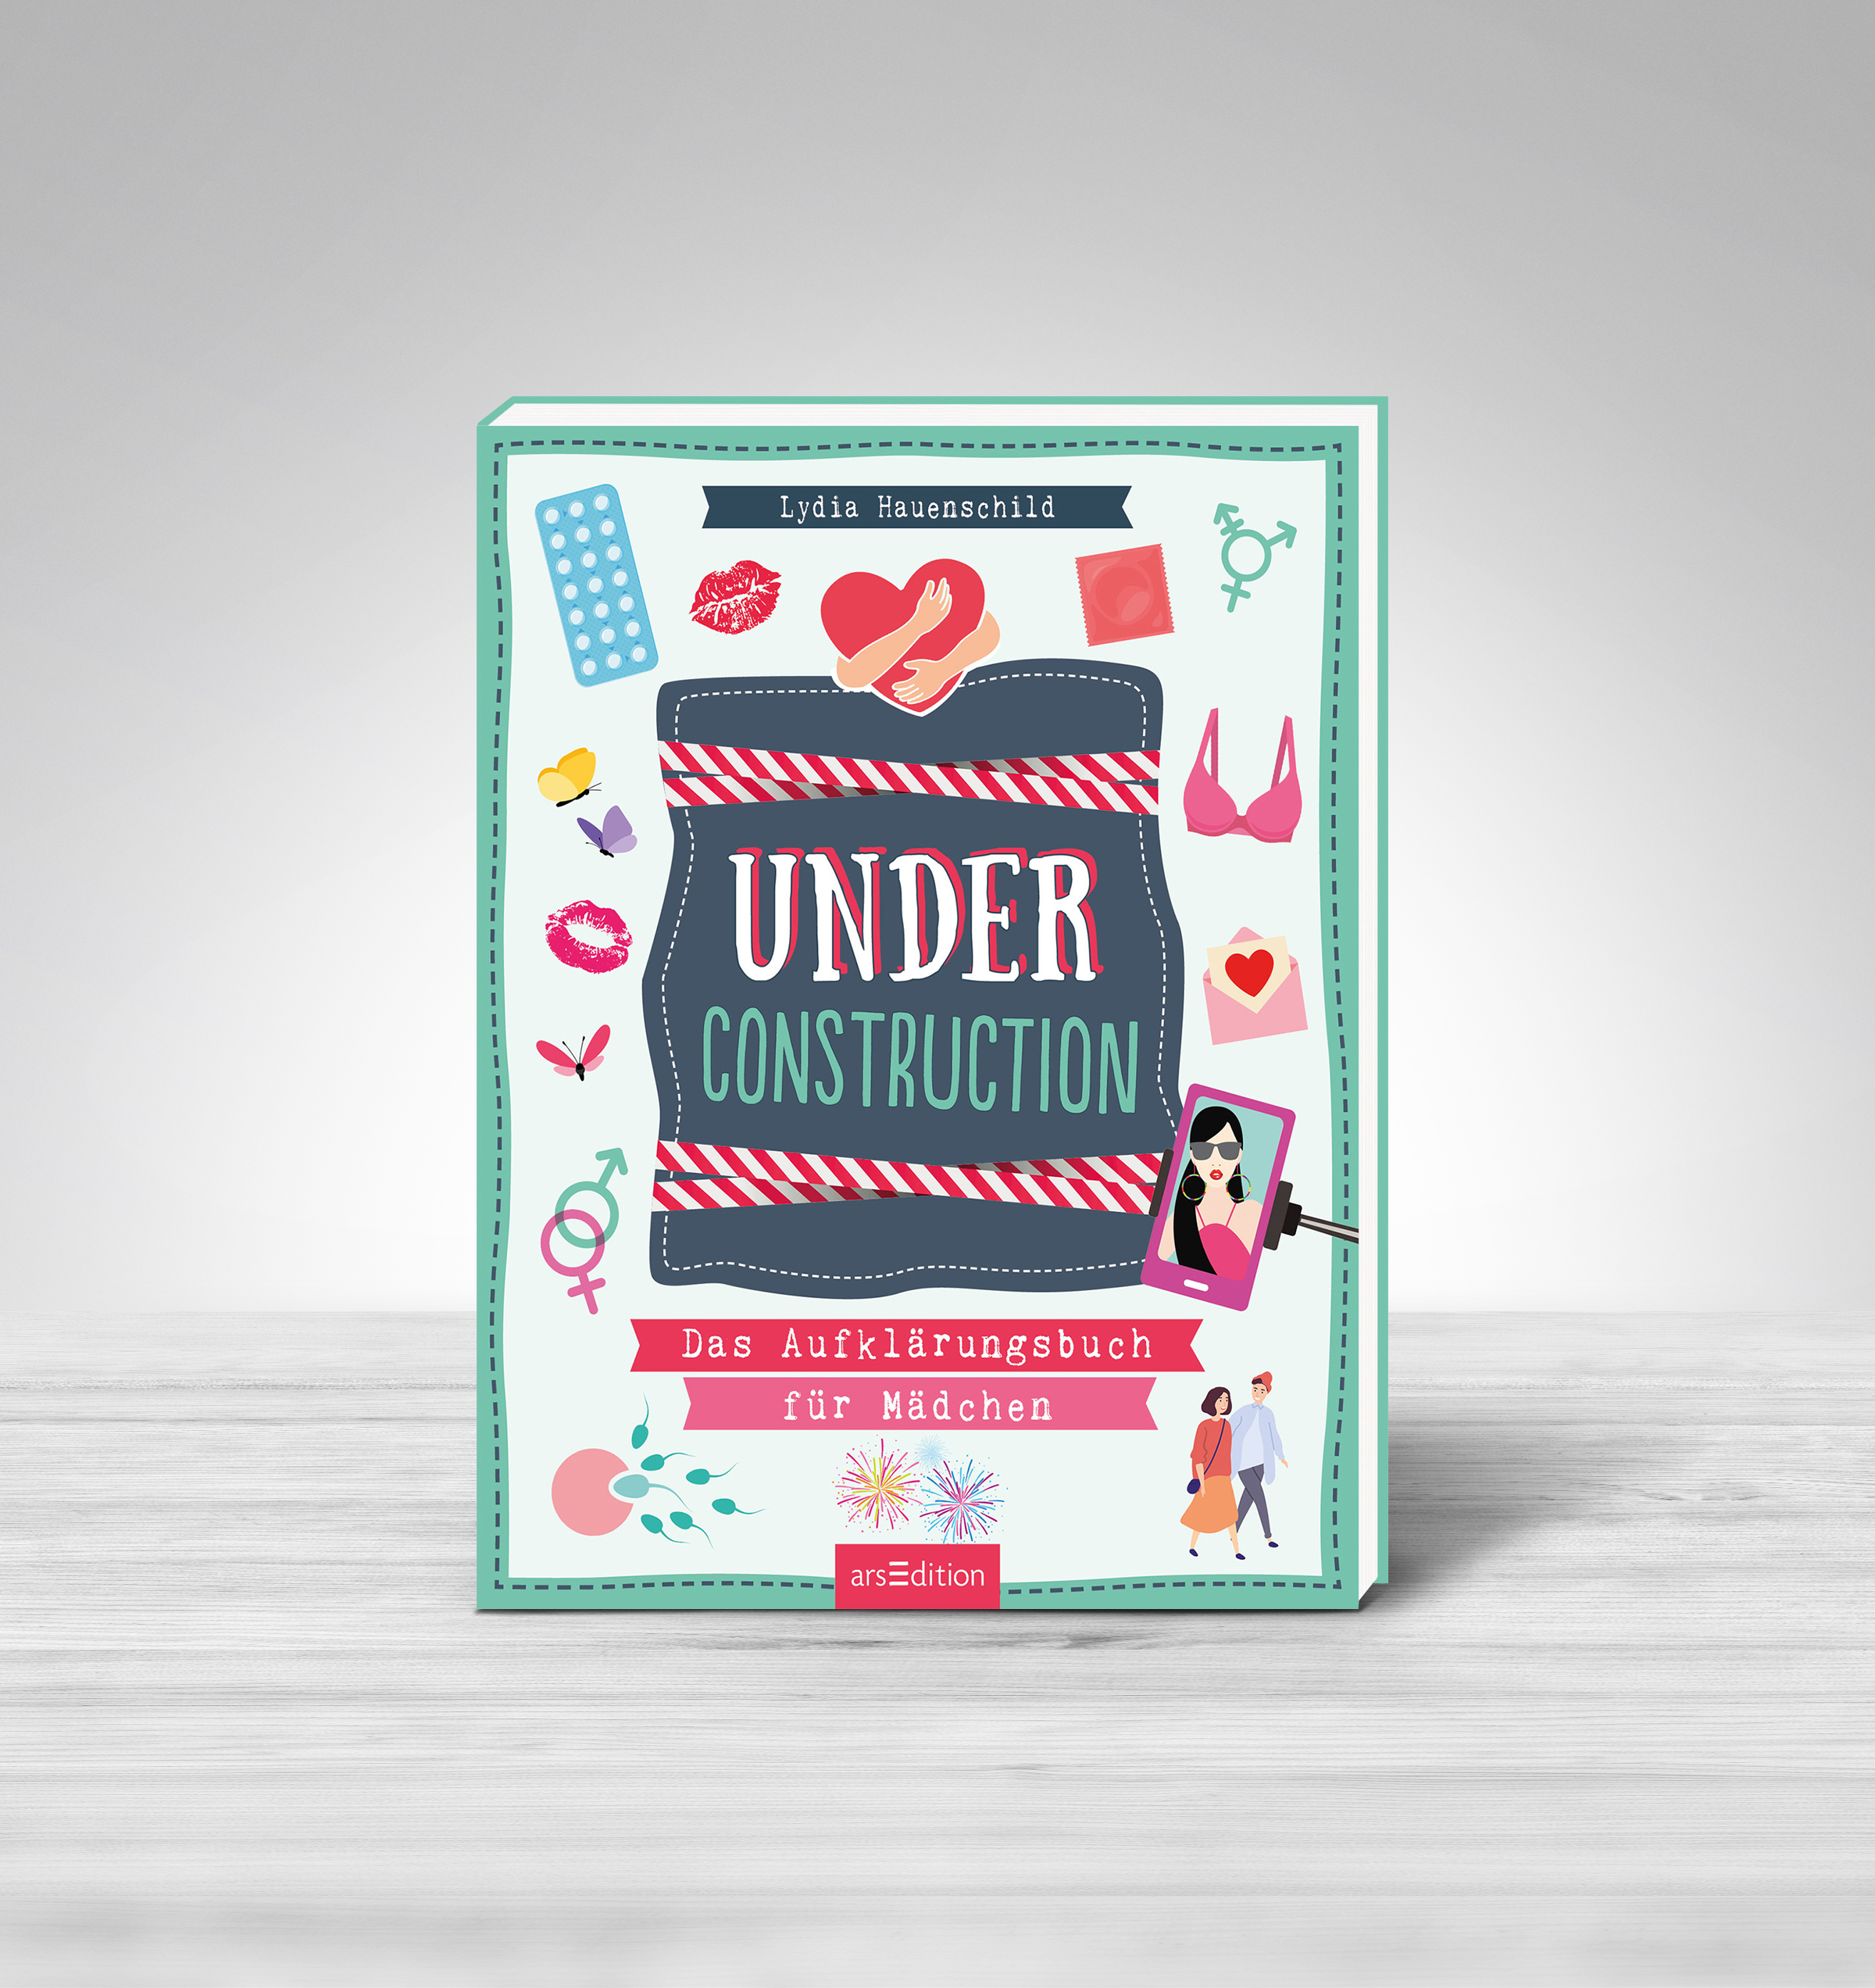 Under construction – Das Aufklärungsbuch für Mädchen